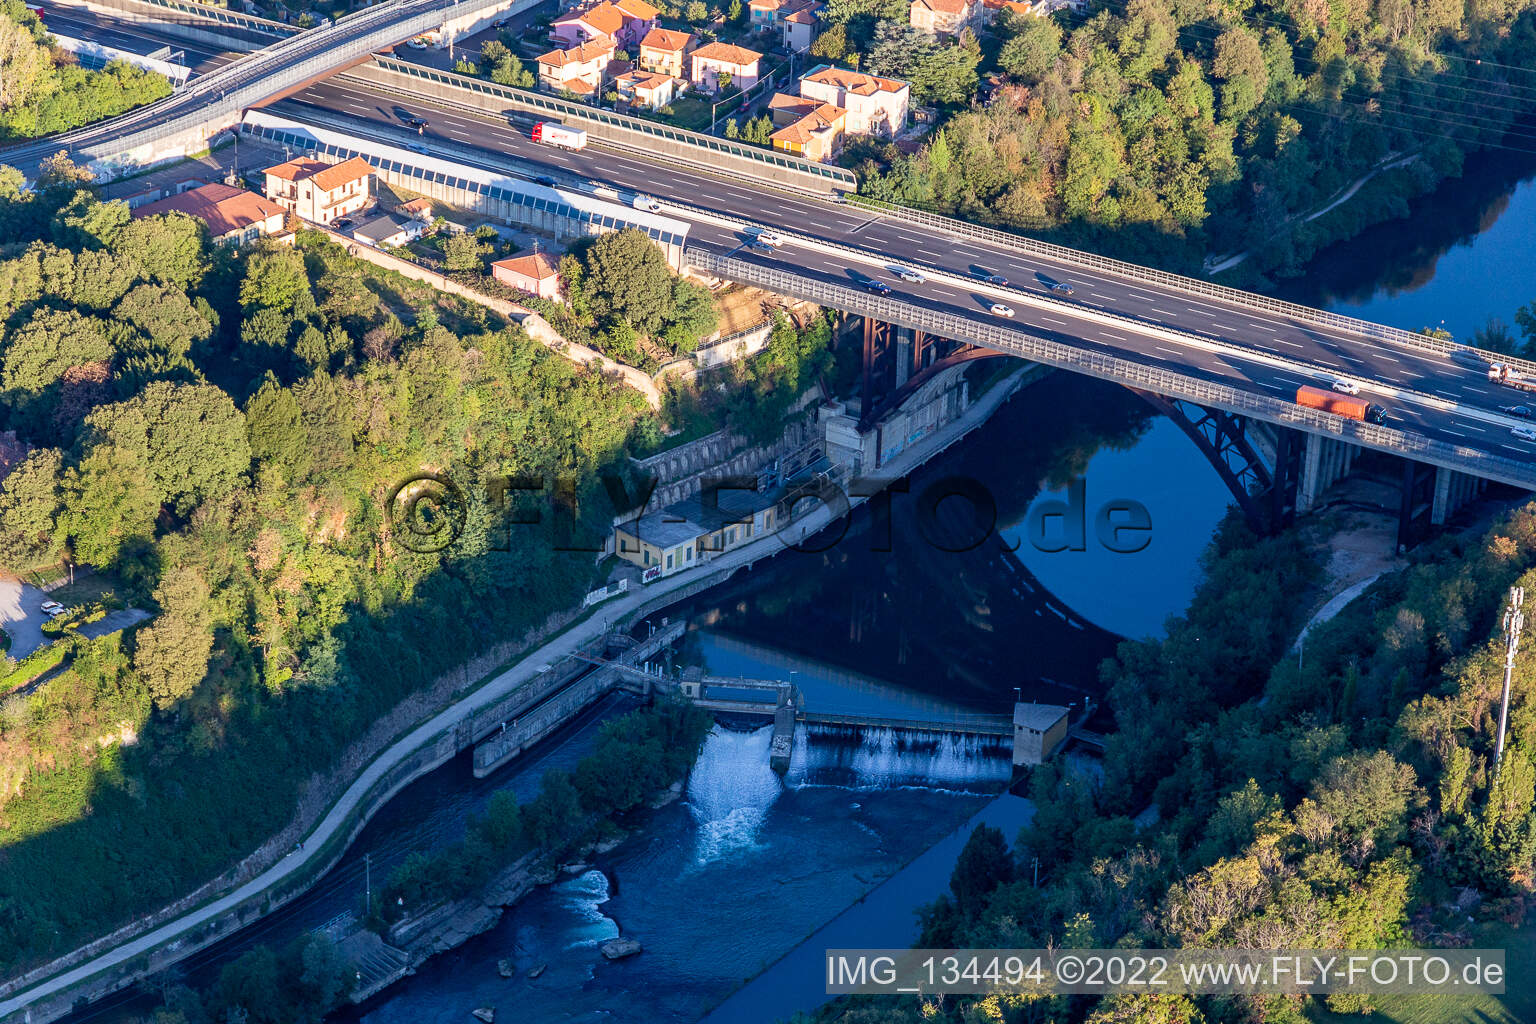 Vue aérienne de Cascade d'Adda à Trezzo sull’Adda dans le département Lombardie, Italie